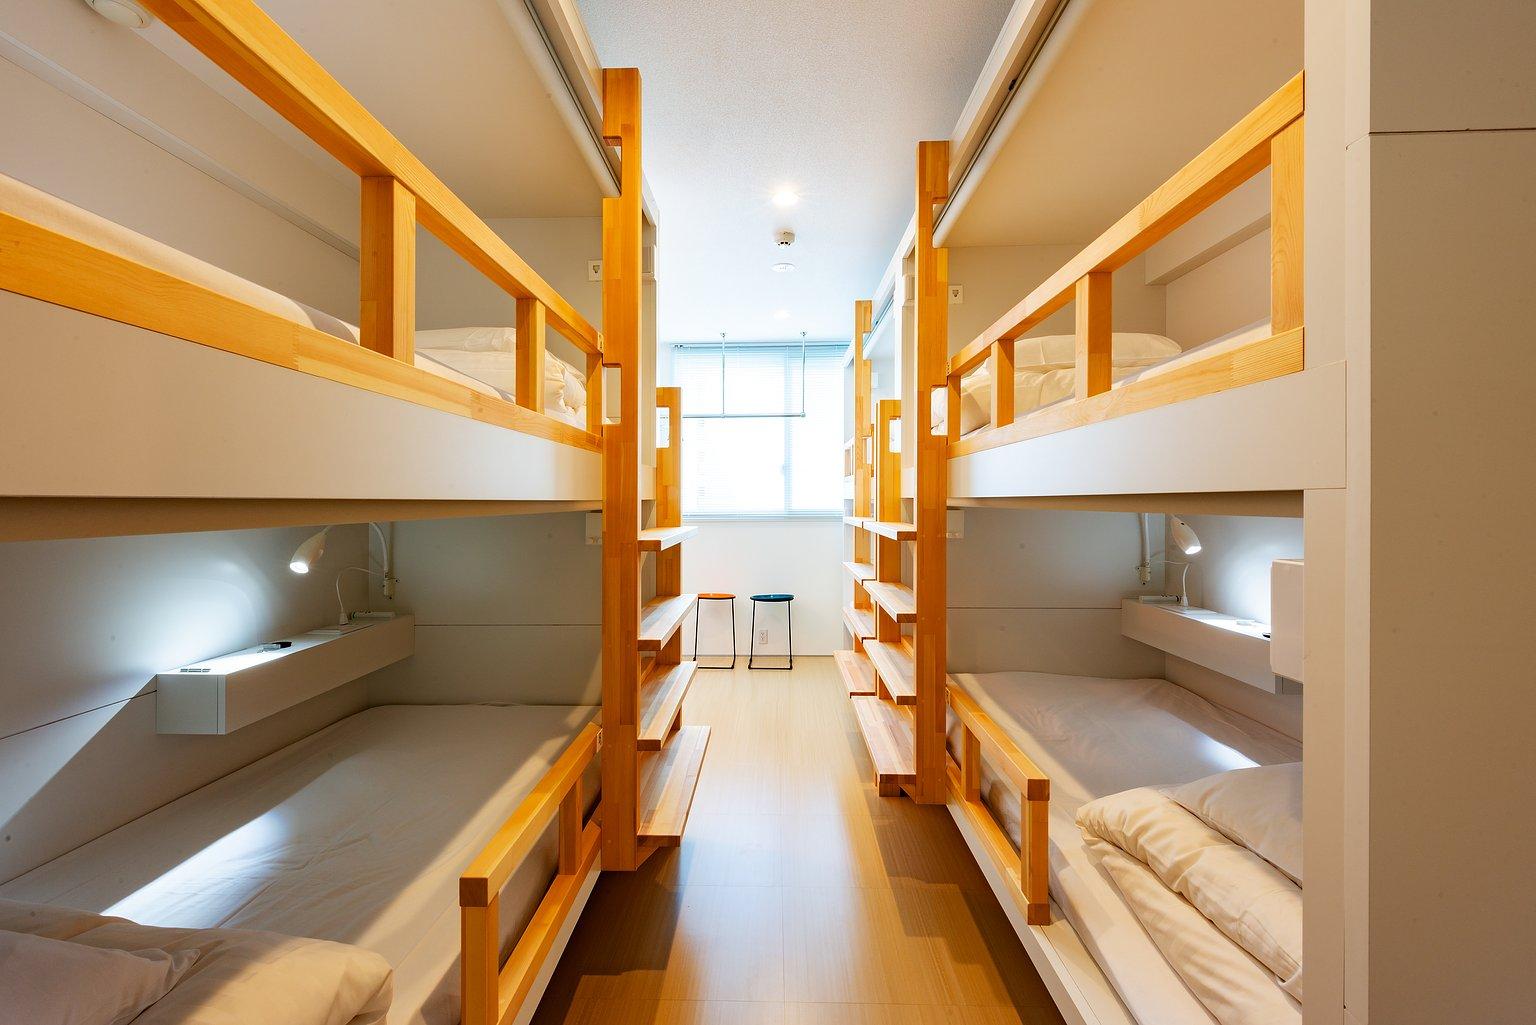 Mixed Dormitory - plat hostel keikyu sapporo sky